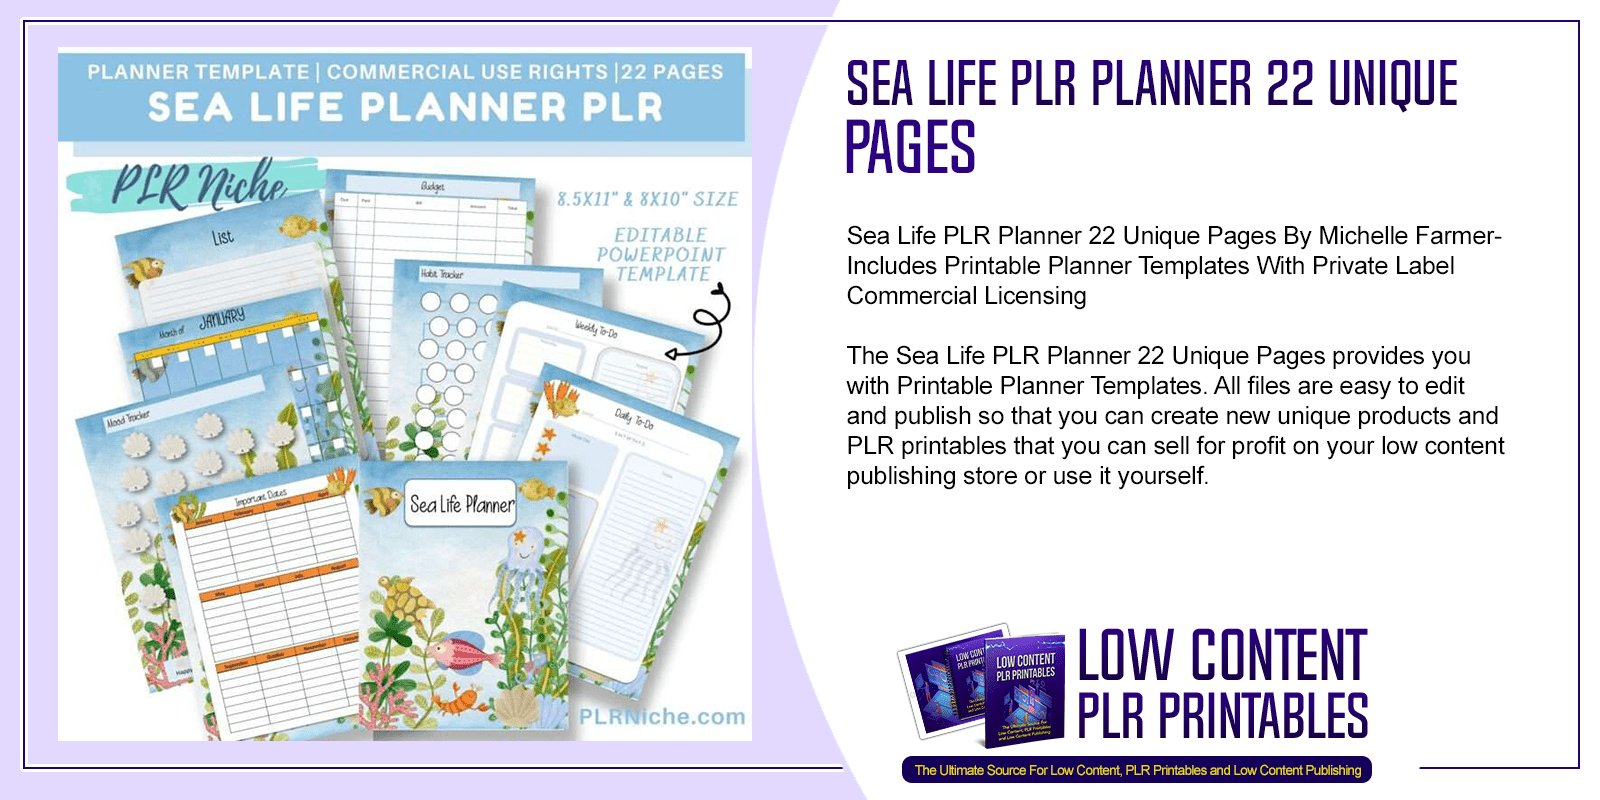 Sea Life PLR Planner 22 Unique Pages